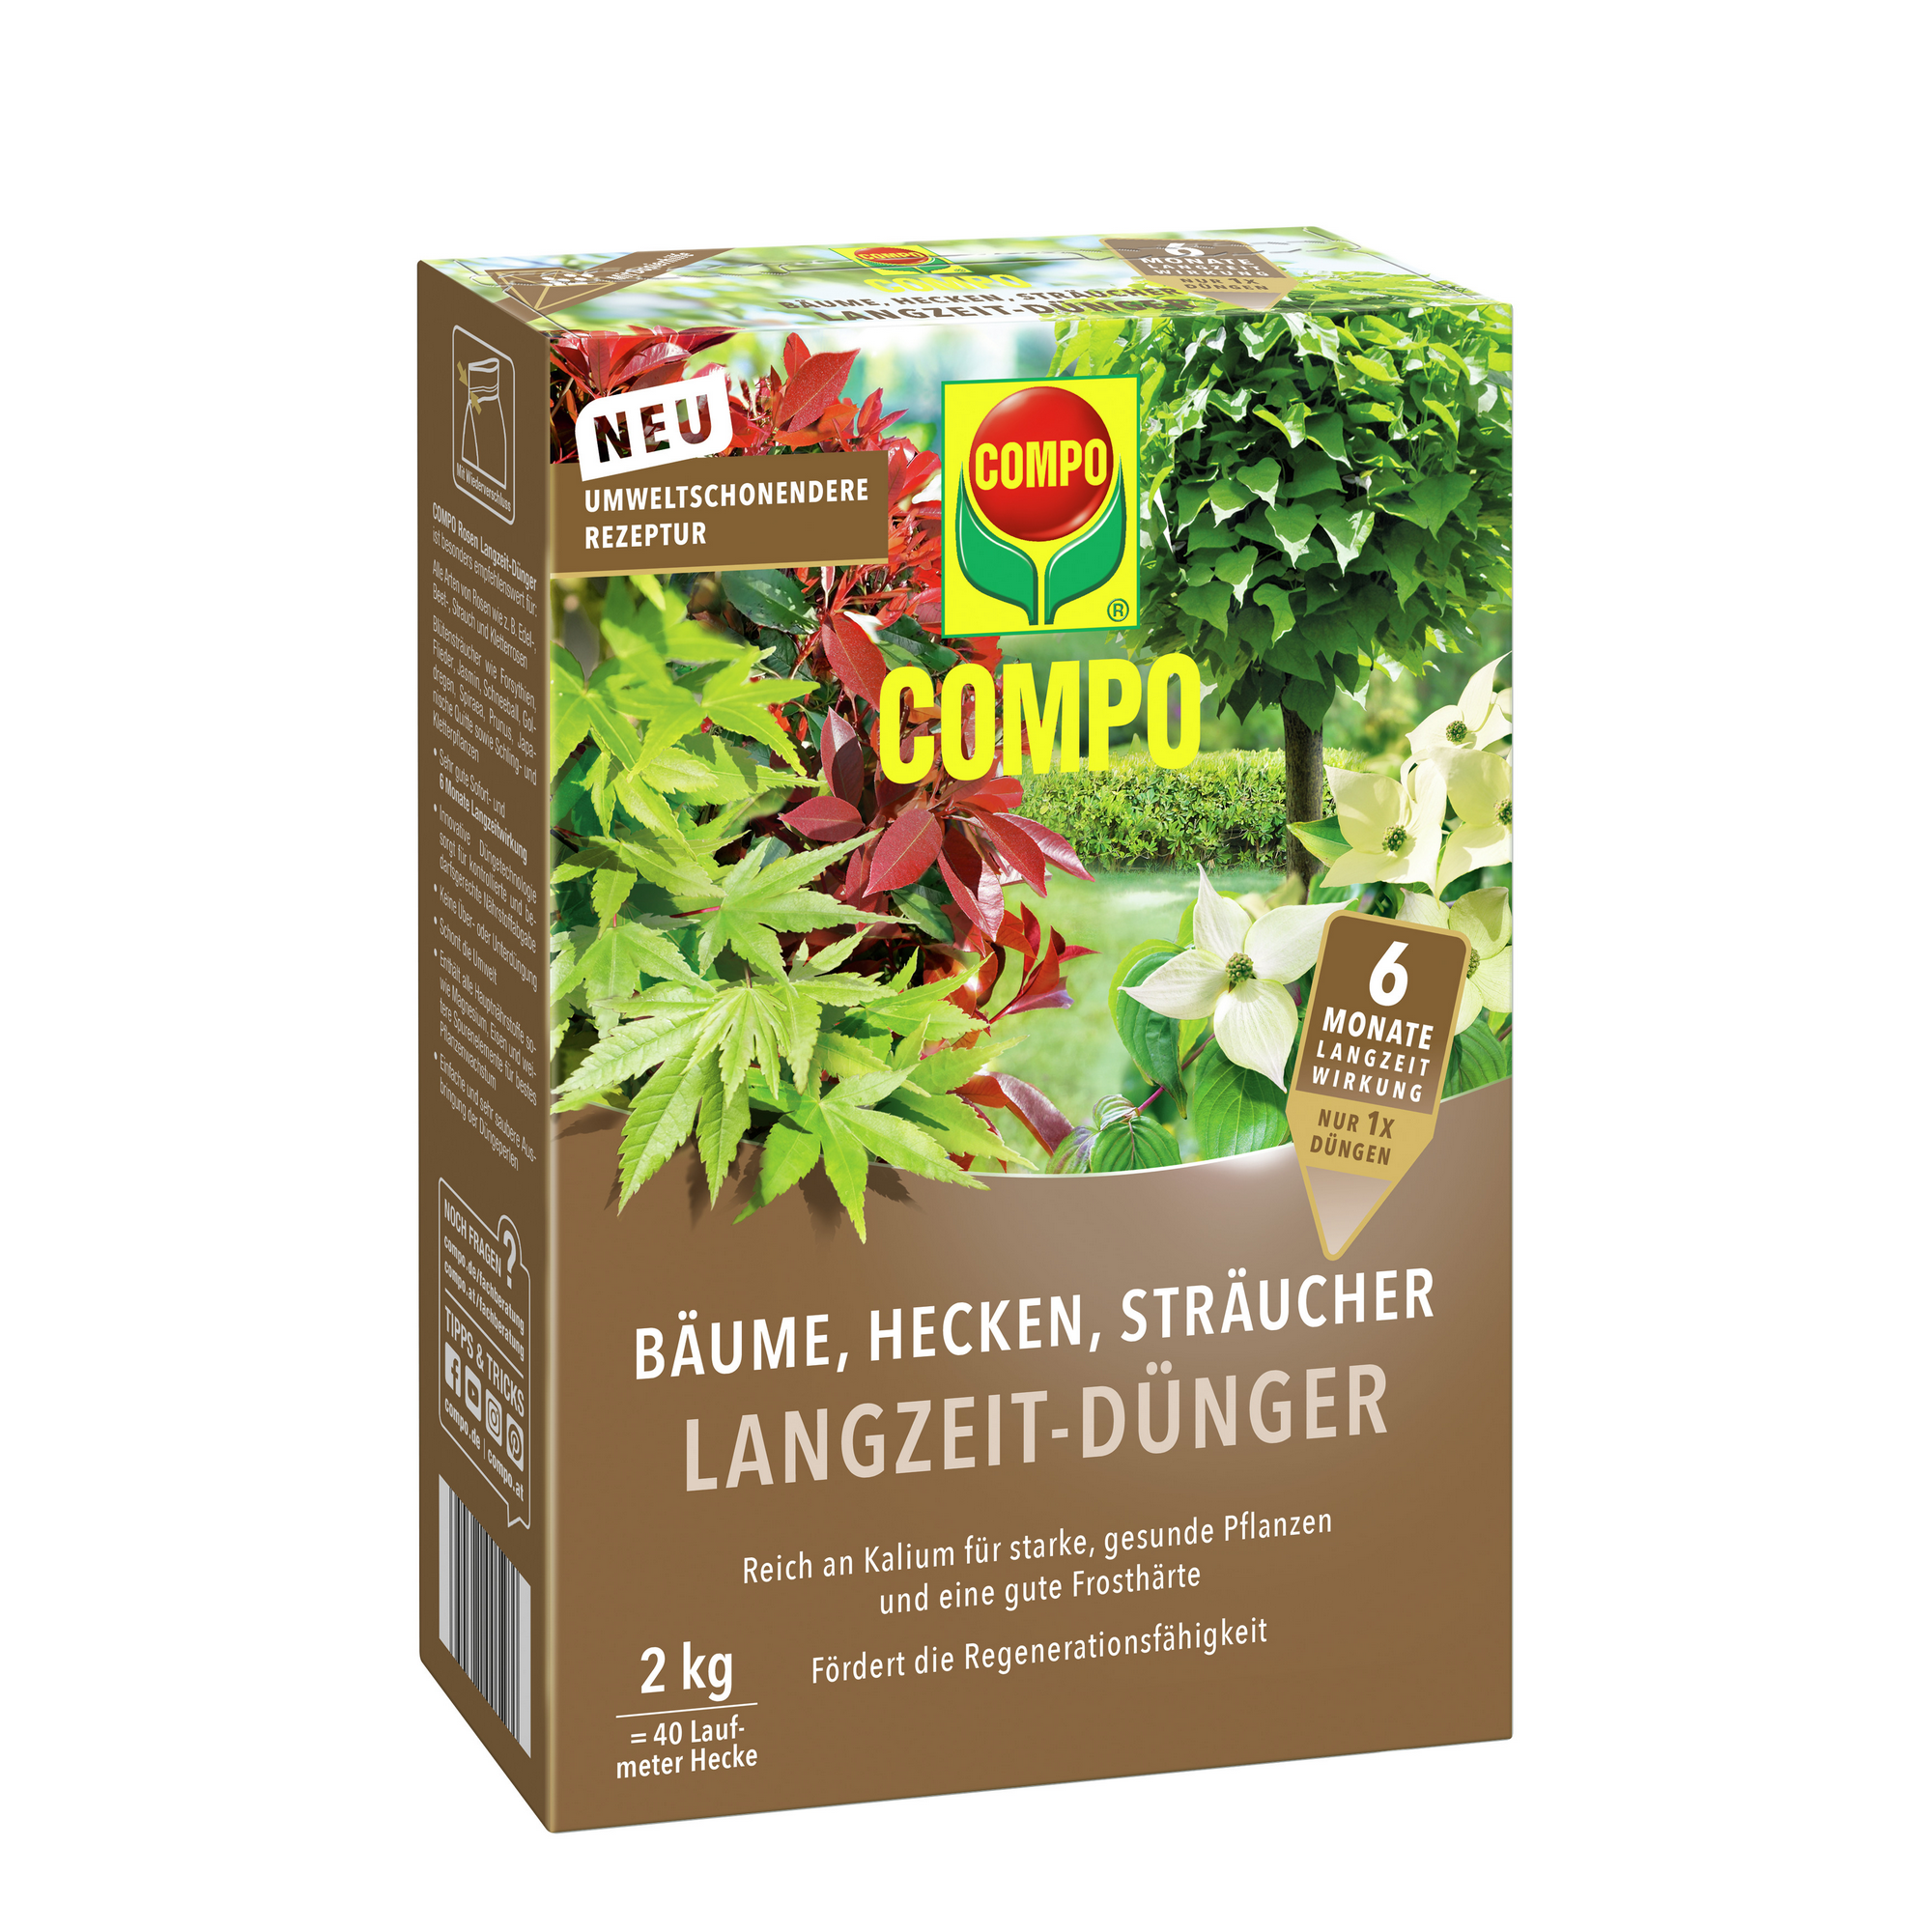 Langzeitdünger für Bäume, Hecken & Sträucher 2 kg + product picture